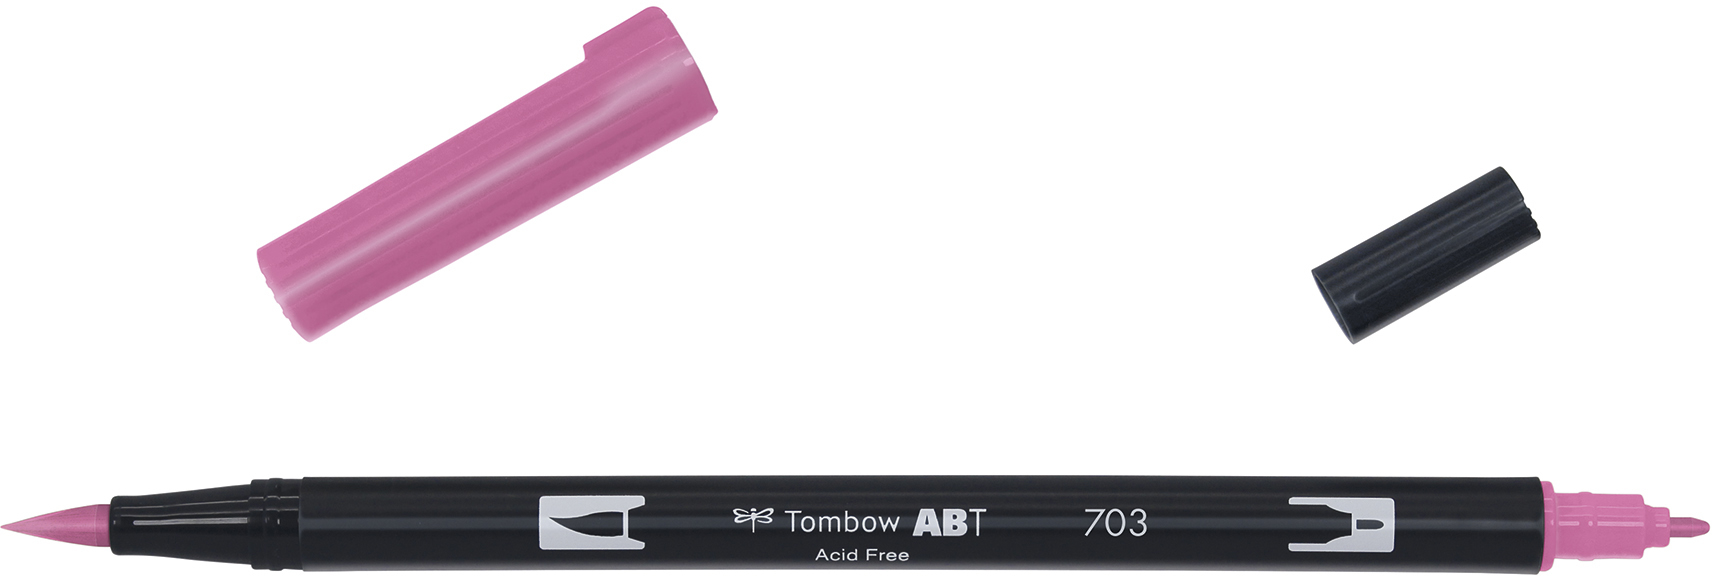 TOMBOW Dual Brush Pen ABT 703 pink rose pink rose